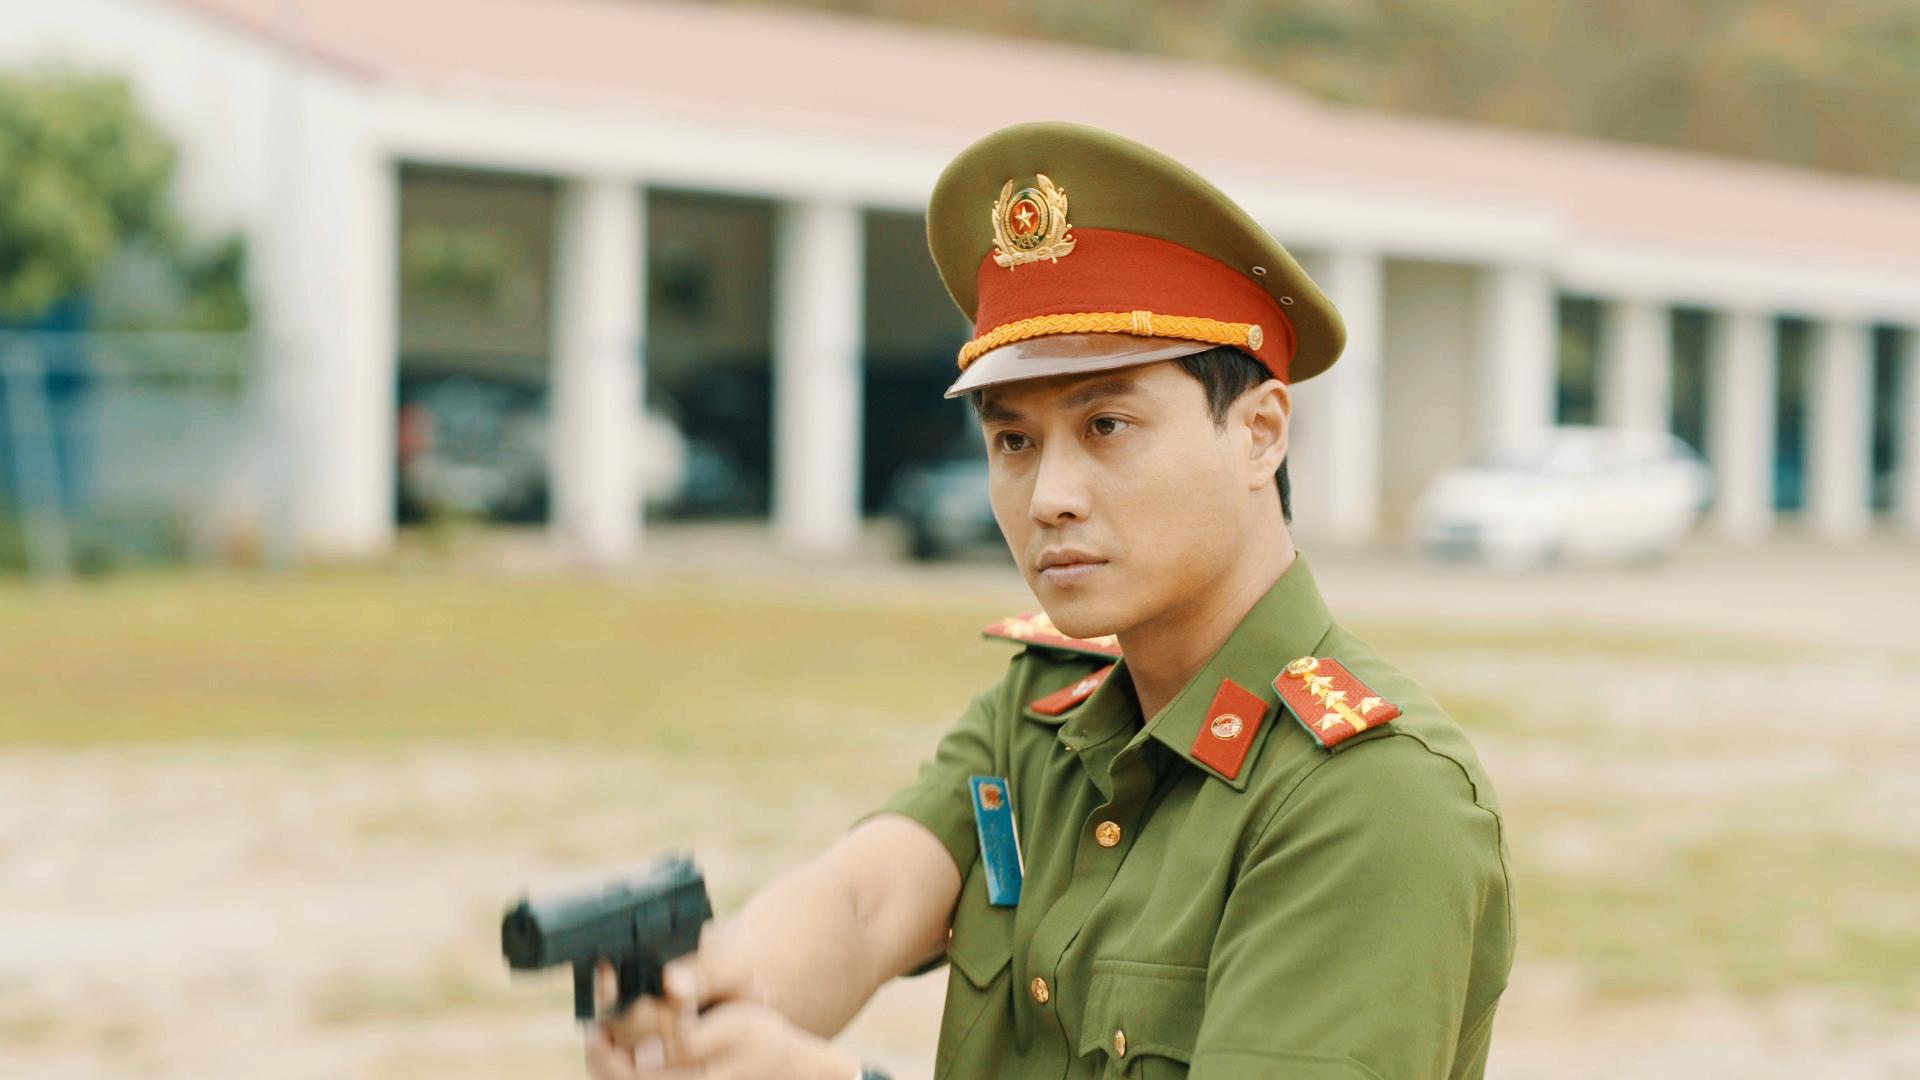 Bộ phim 'Đấu Trí' bước ngoặc đánh dấu sự thay đổi về mặt diễn xuất cũng như hình tượng nhân vật của Thanh Sơn